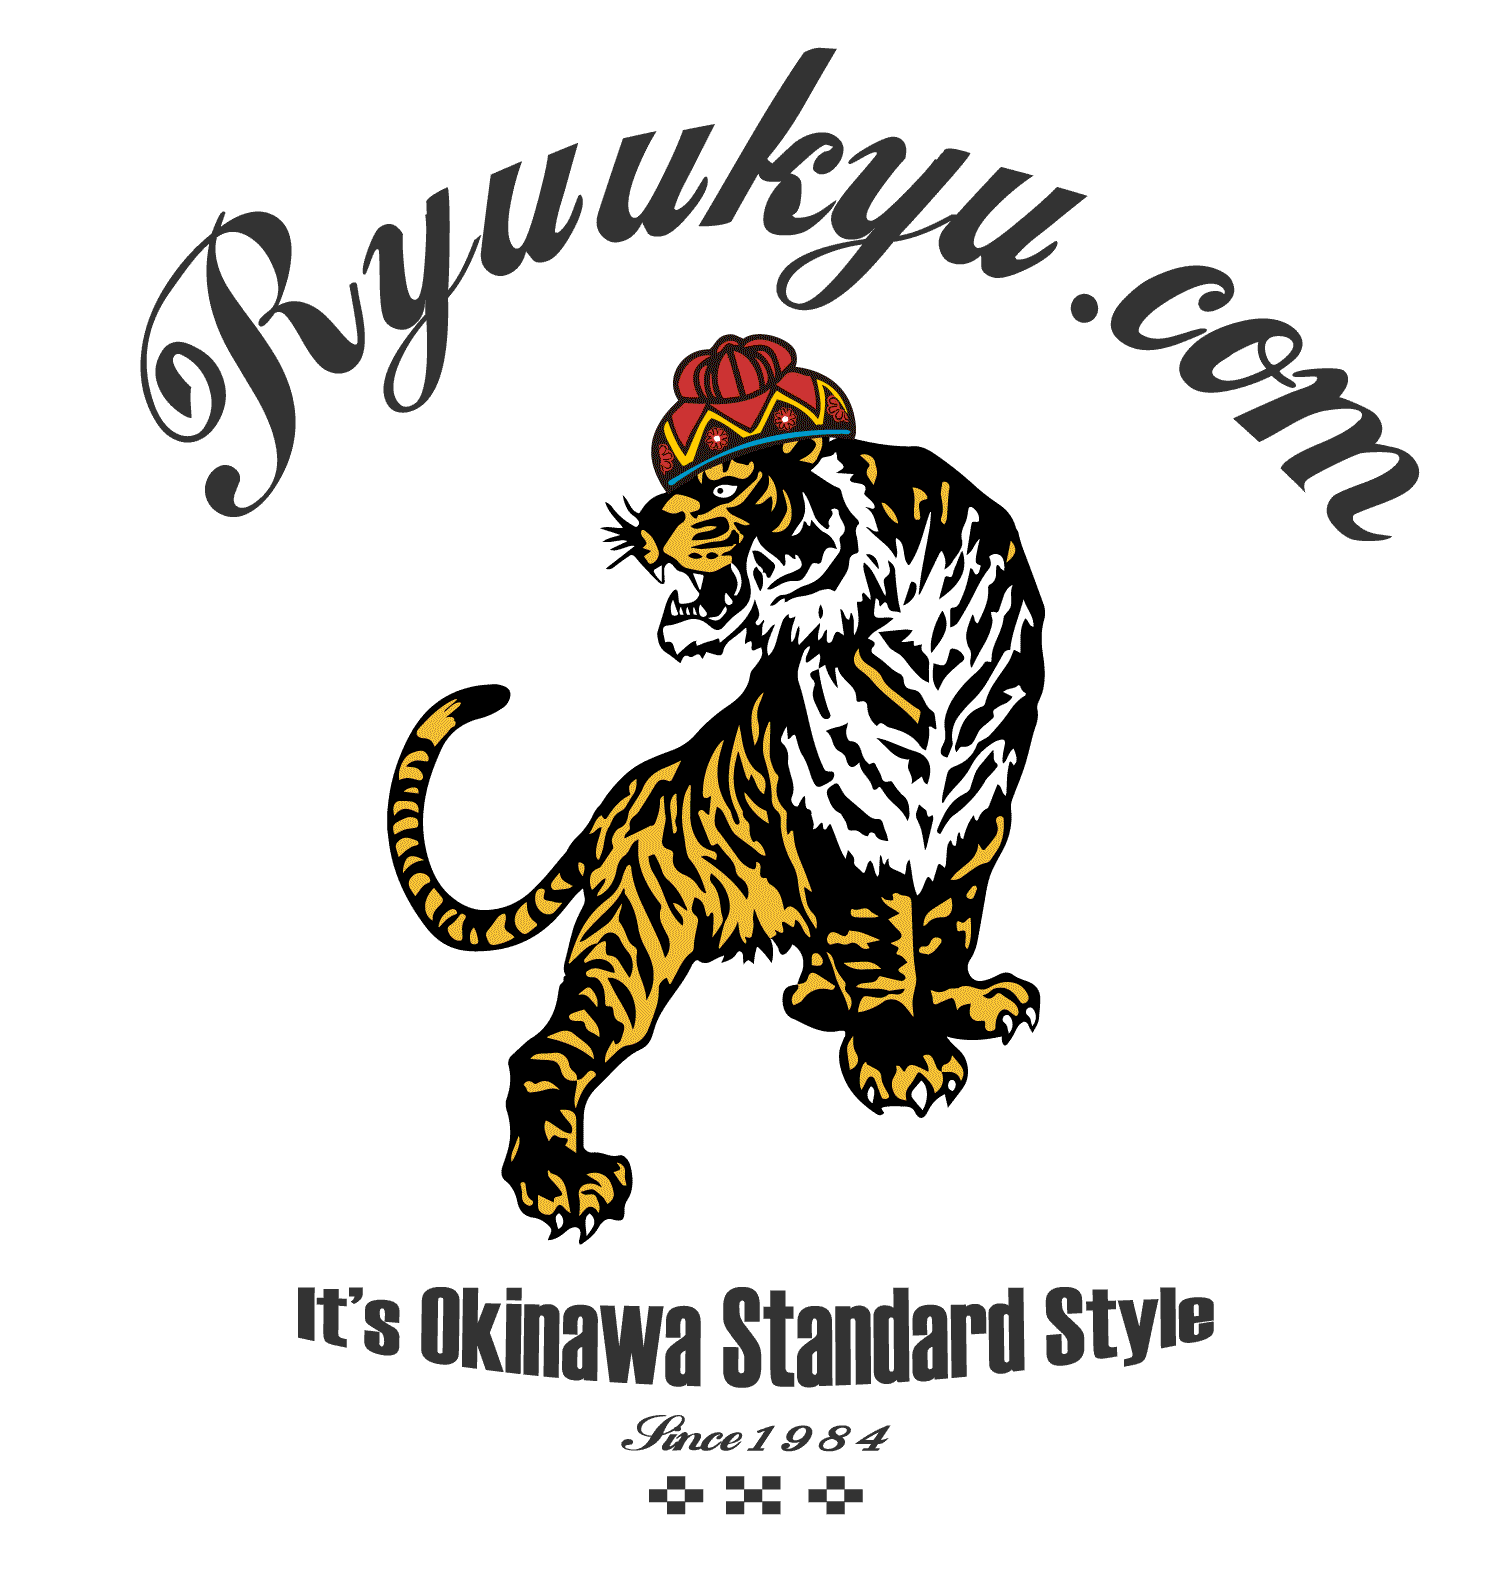 ryuukyu.com